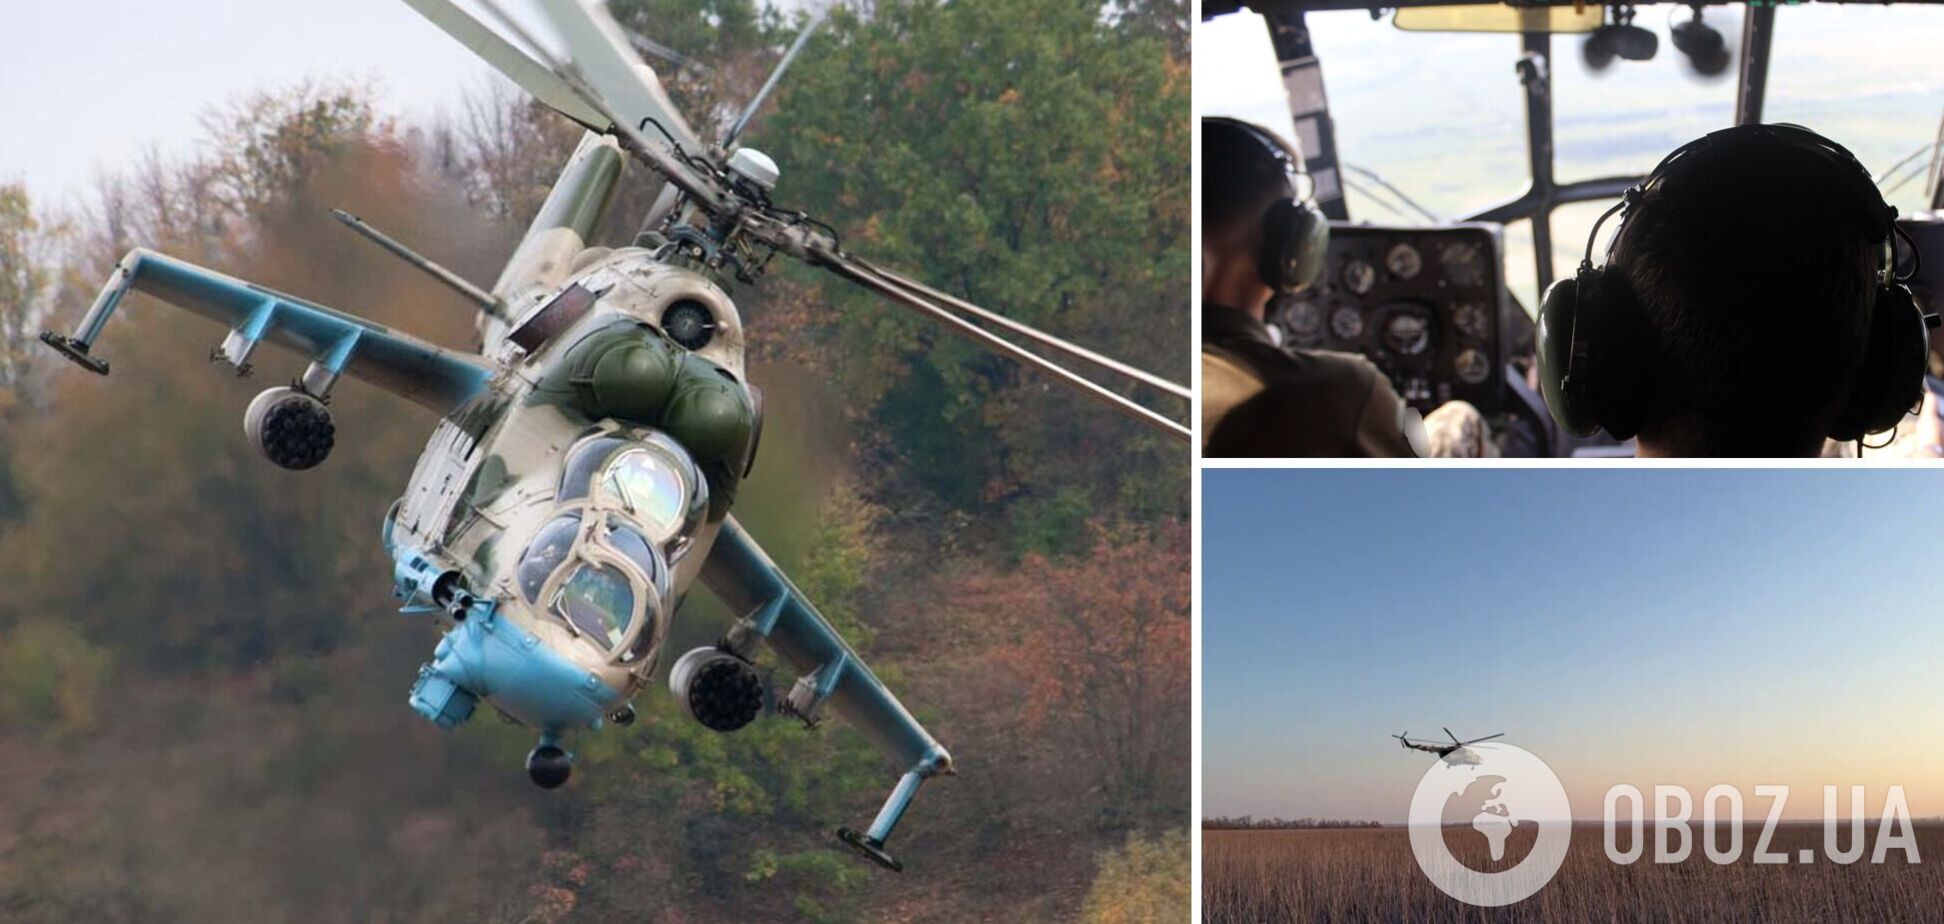 Українські авіатори передали привіт із неба сонячного бойового дня: відео, що надихає